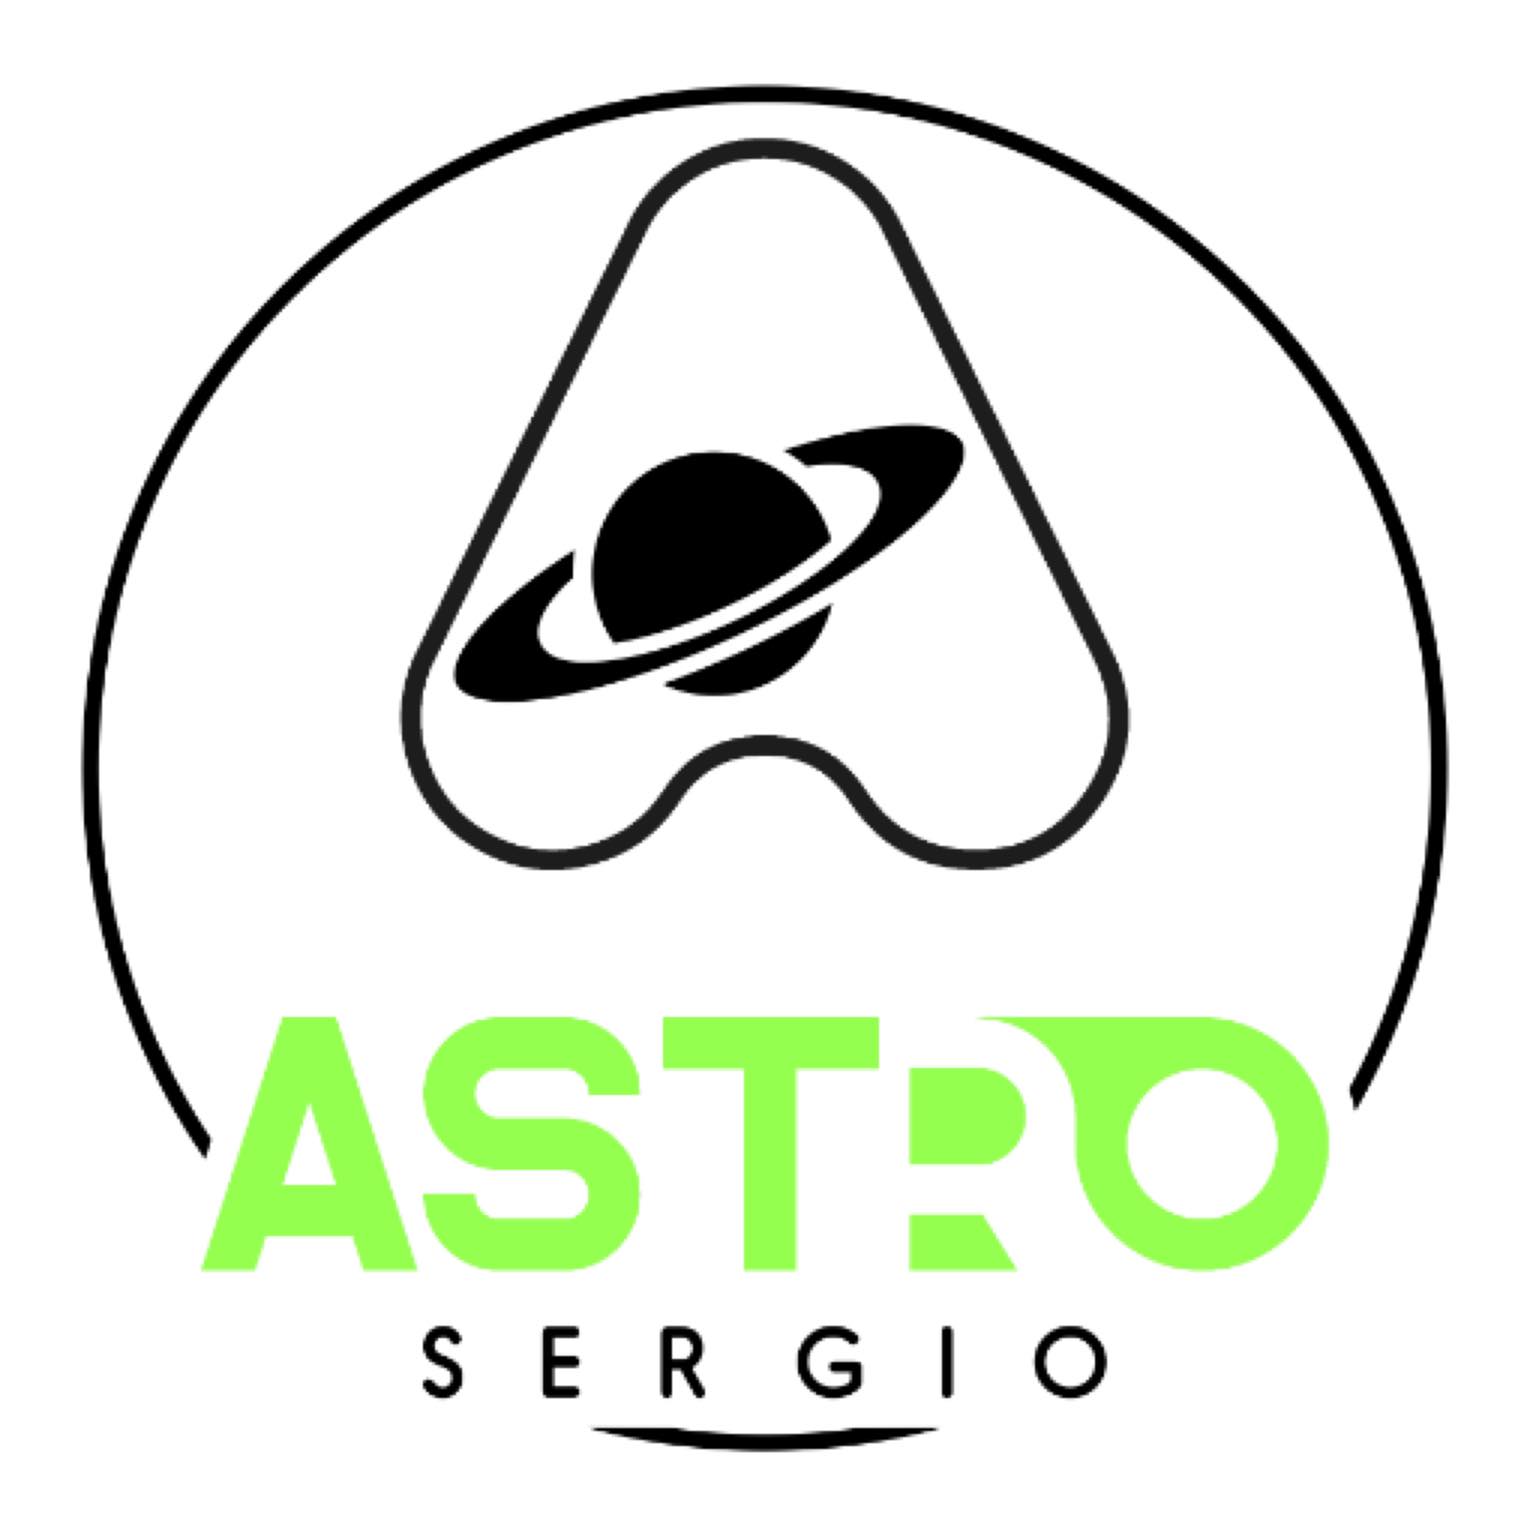 Sergio Astro